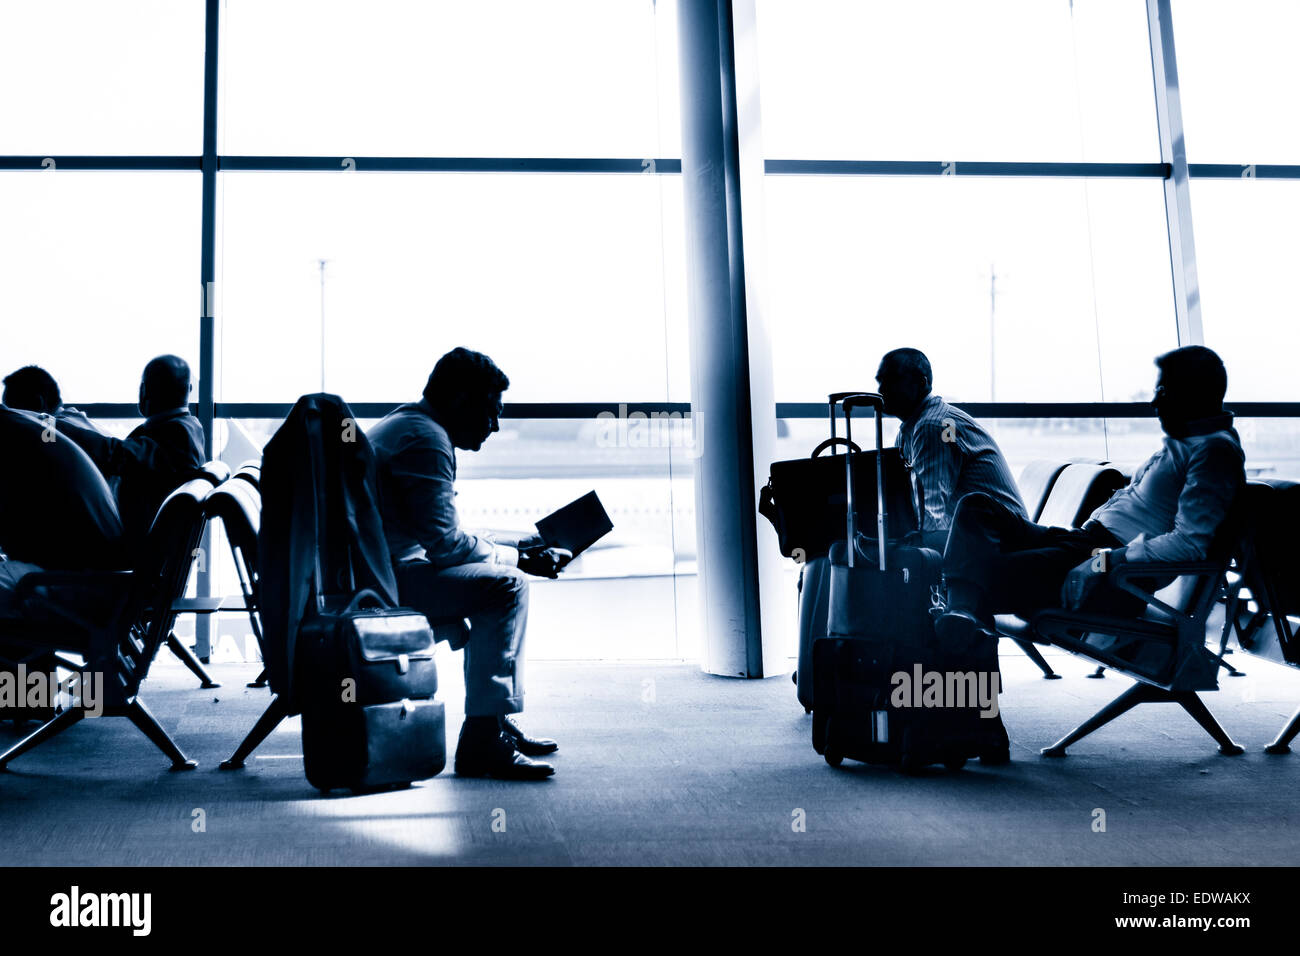 Les personnes voyageant sur des silhouettes de l'aéroport Banque D'Images